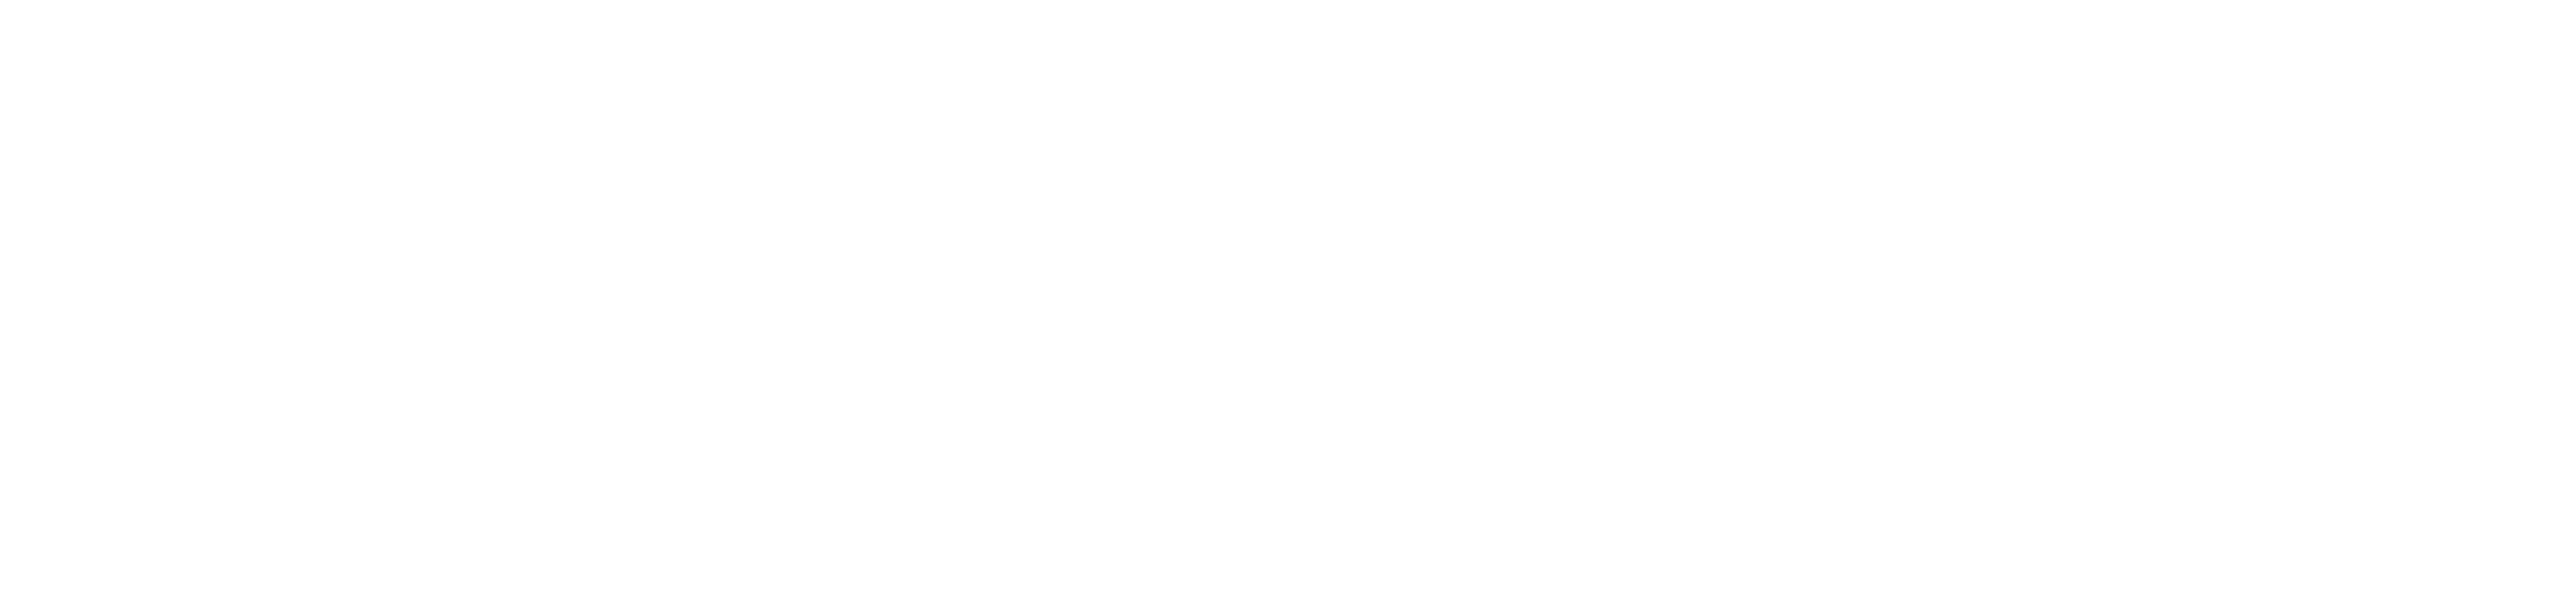 Primary-Logo-White